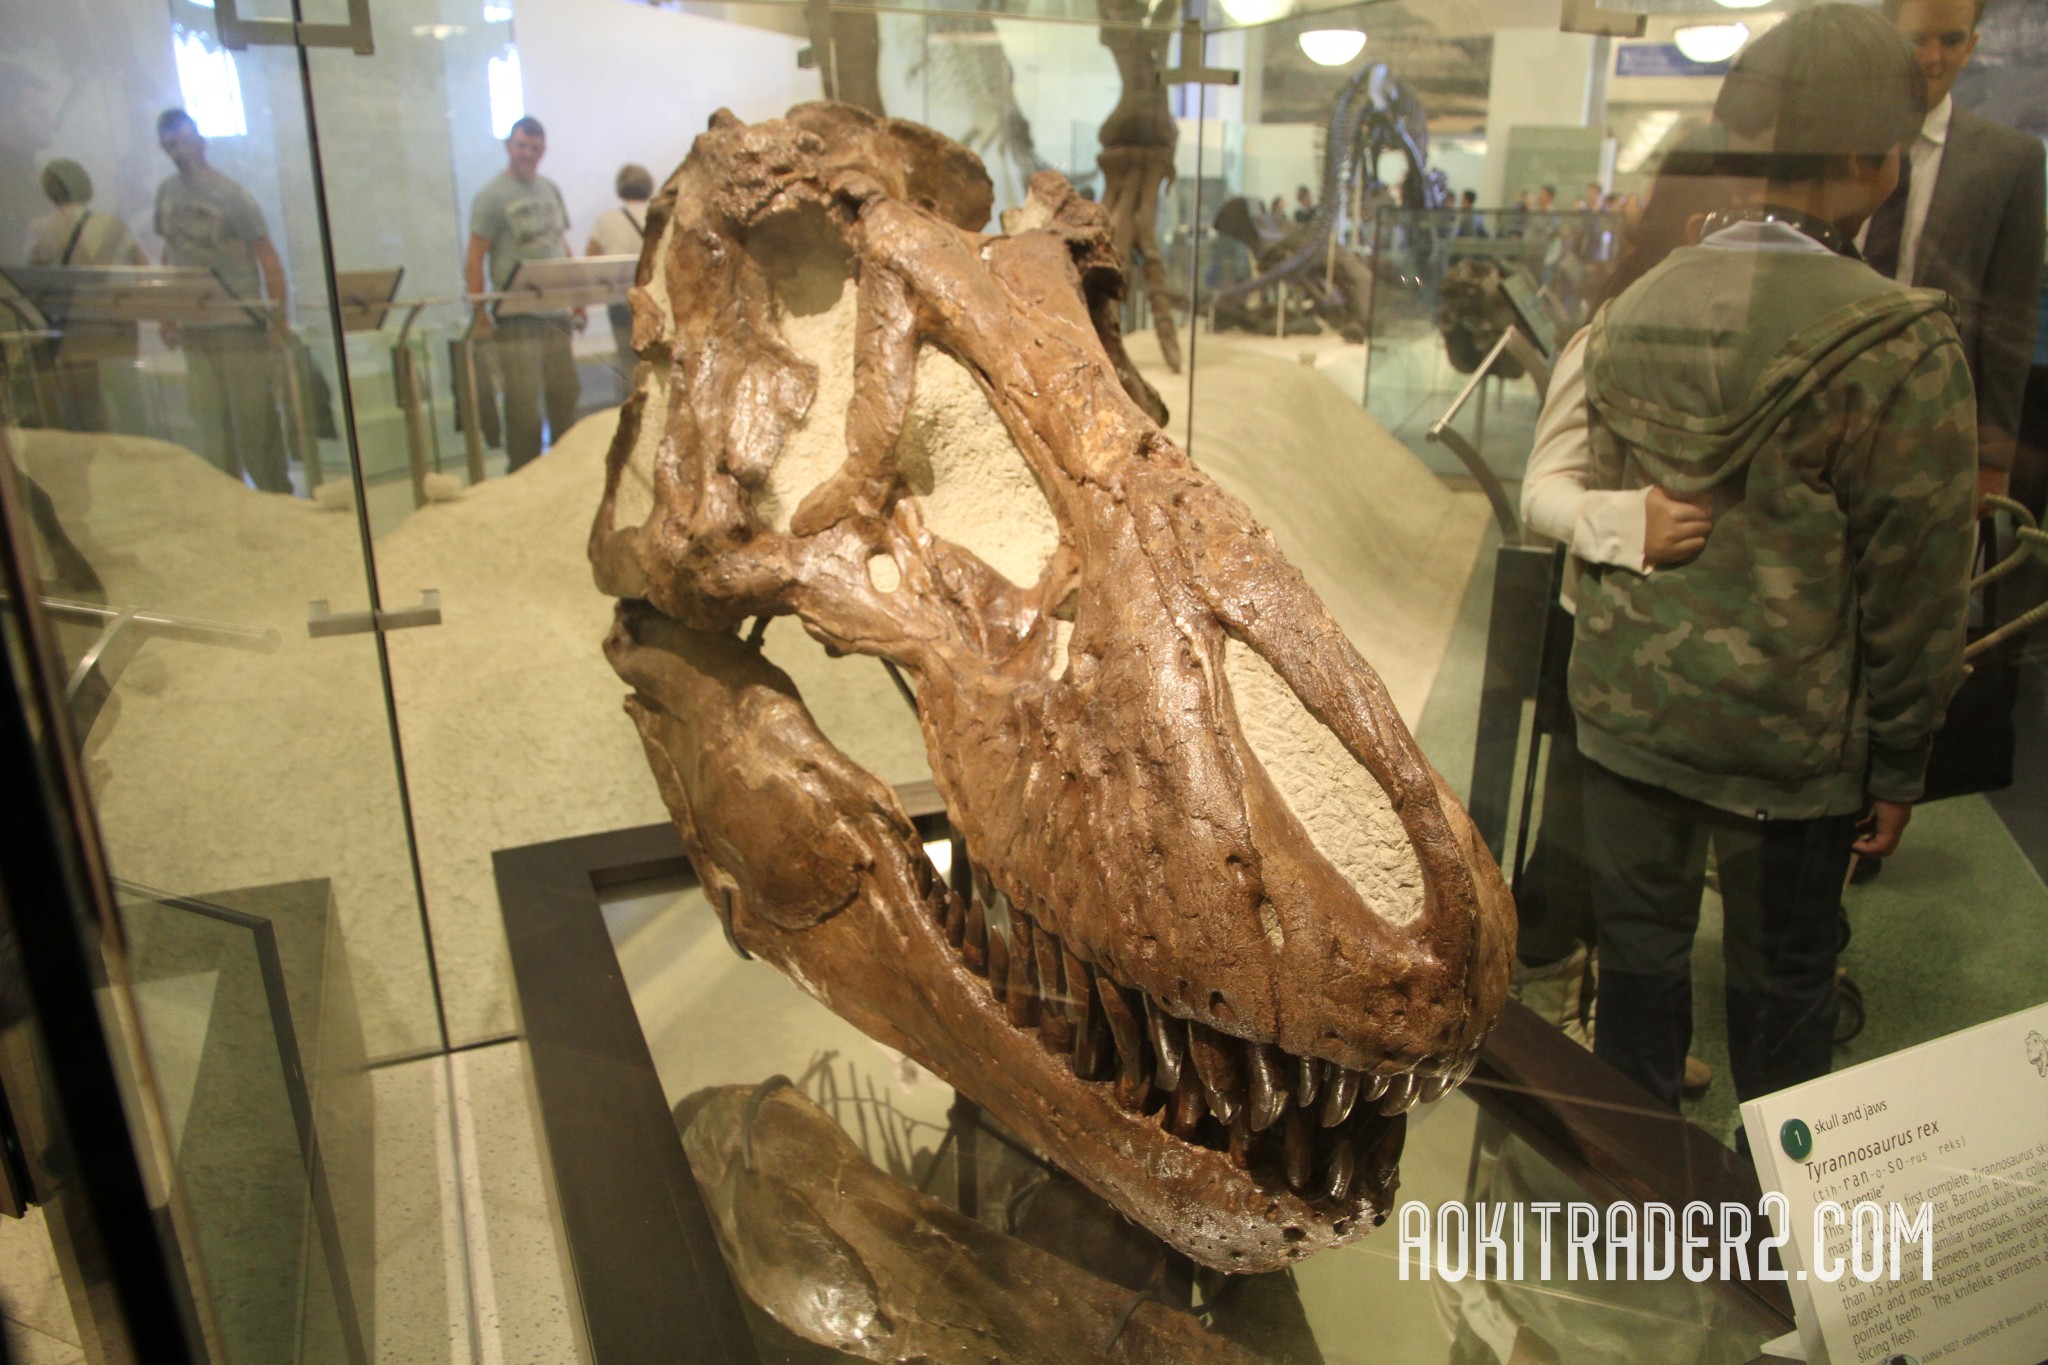 バーナム・ブラウンが発見したティラノサウルスの頭蓋骨